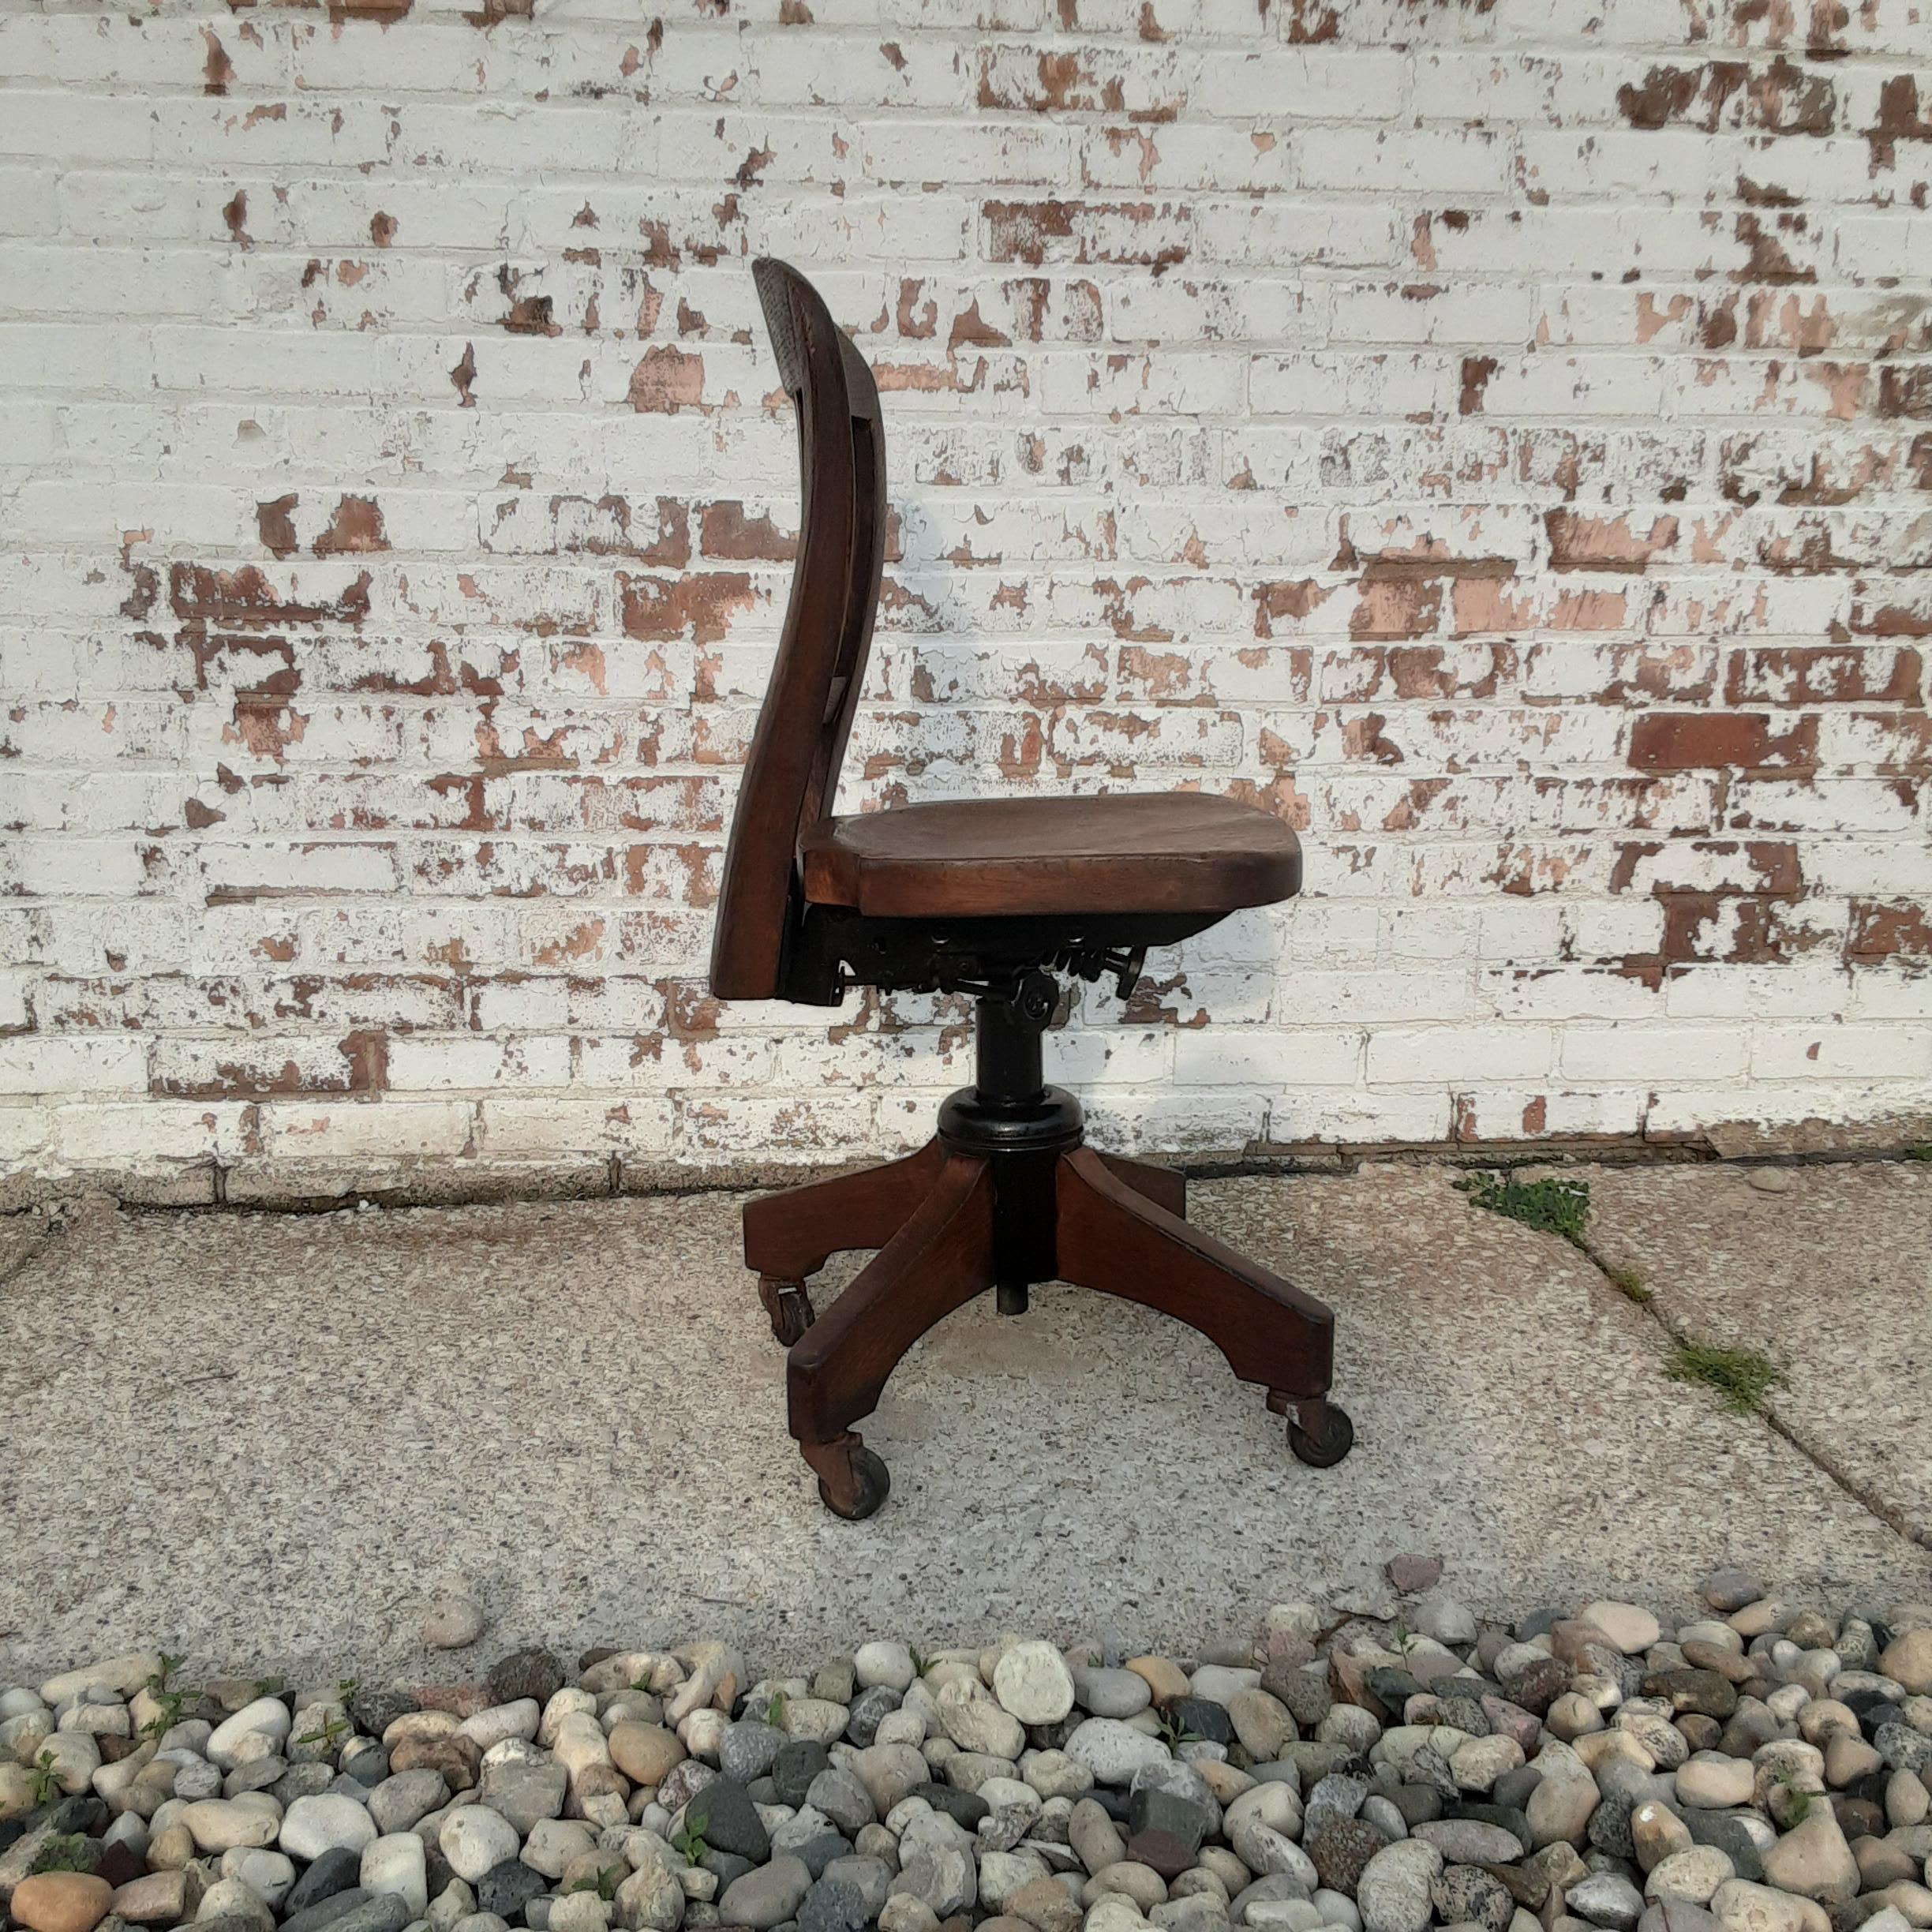 La beauté industrielle dans ce qu'elle a de plus ingénieux - cette chaise de bureau pivotante vintage Sikes est un trésor. Le bois dur soigneusement sculpté et les métaux épais se combinent pour créer un perchoir durable et étonnamment confortable.